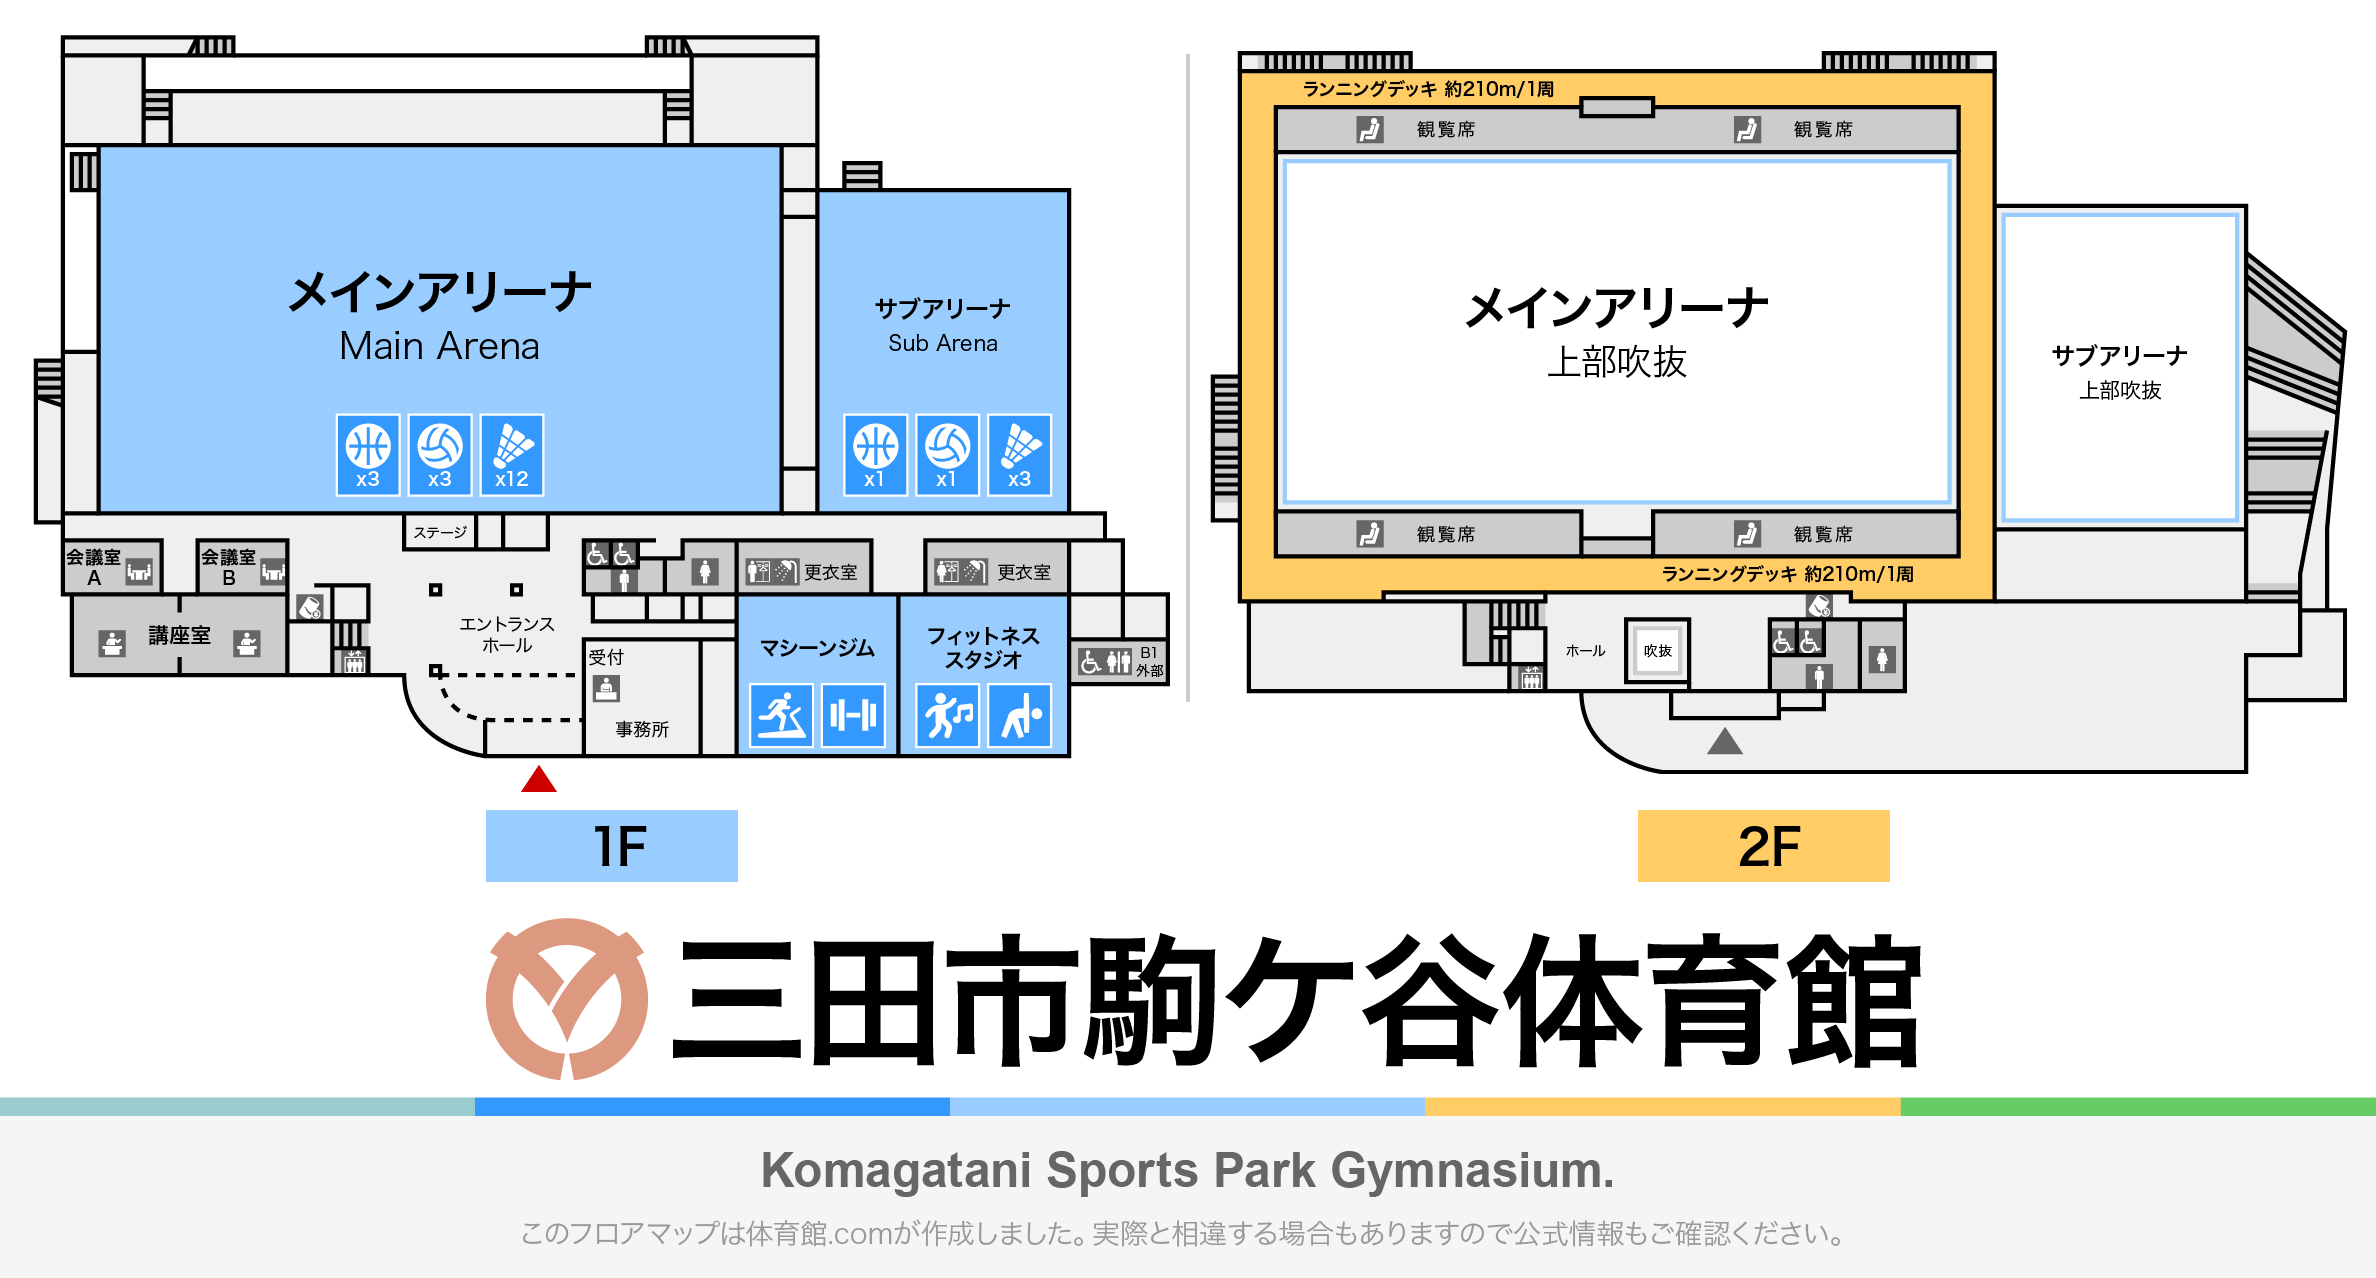 三田市駒ケ谷体育館のフロアマップ・体育館